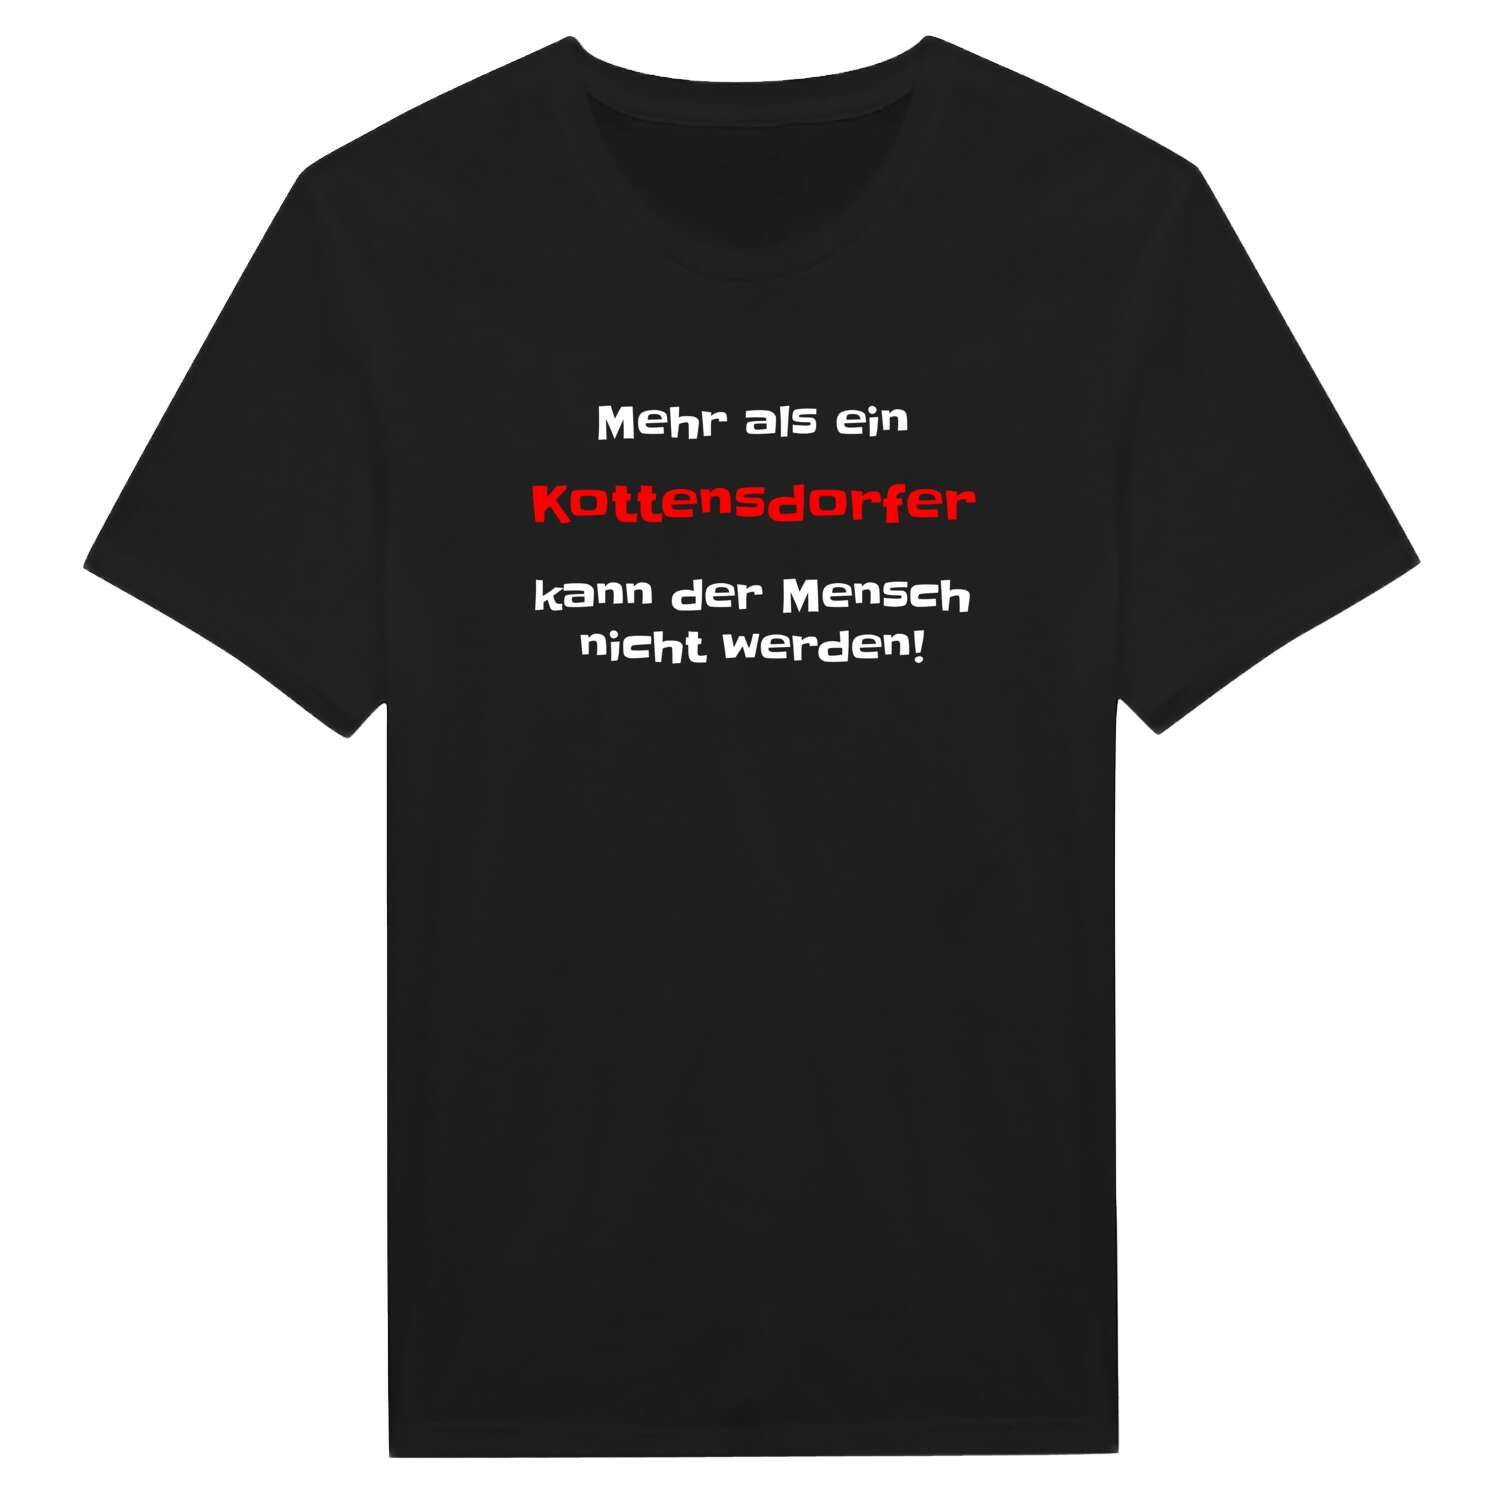 Kottensdorf T-Shirt »Mehr als ein«